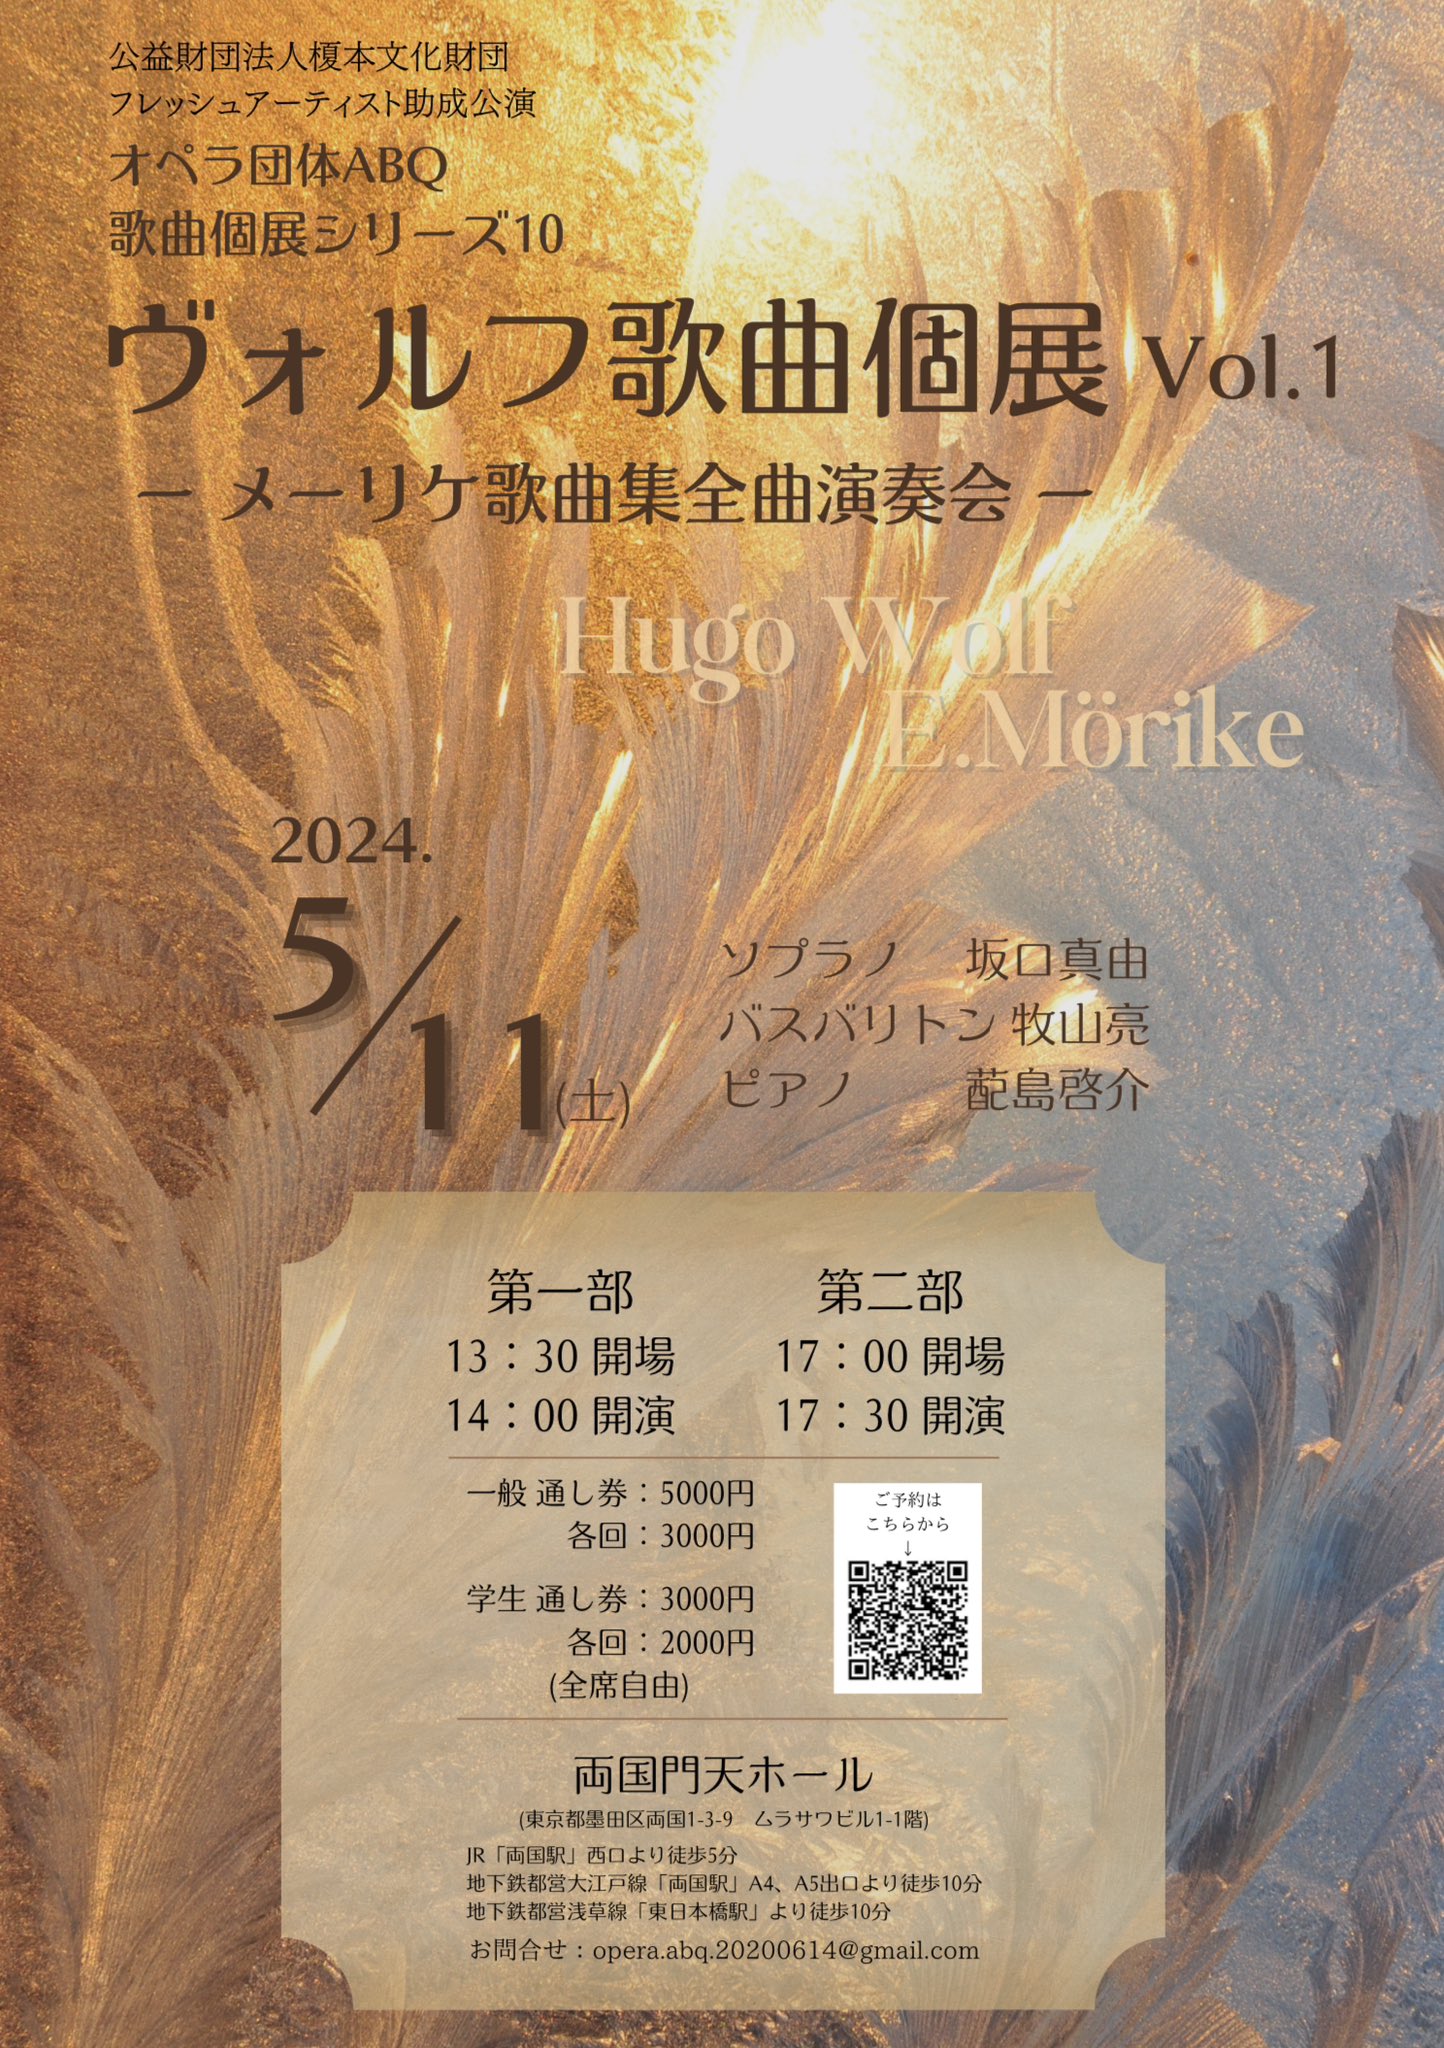 オペラ団体ABQ歌曲個展シリーズ10 ヴォルフ歌曲個展 Vol.1